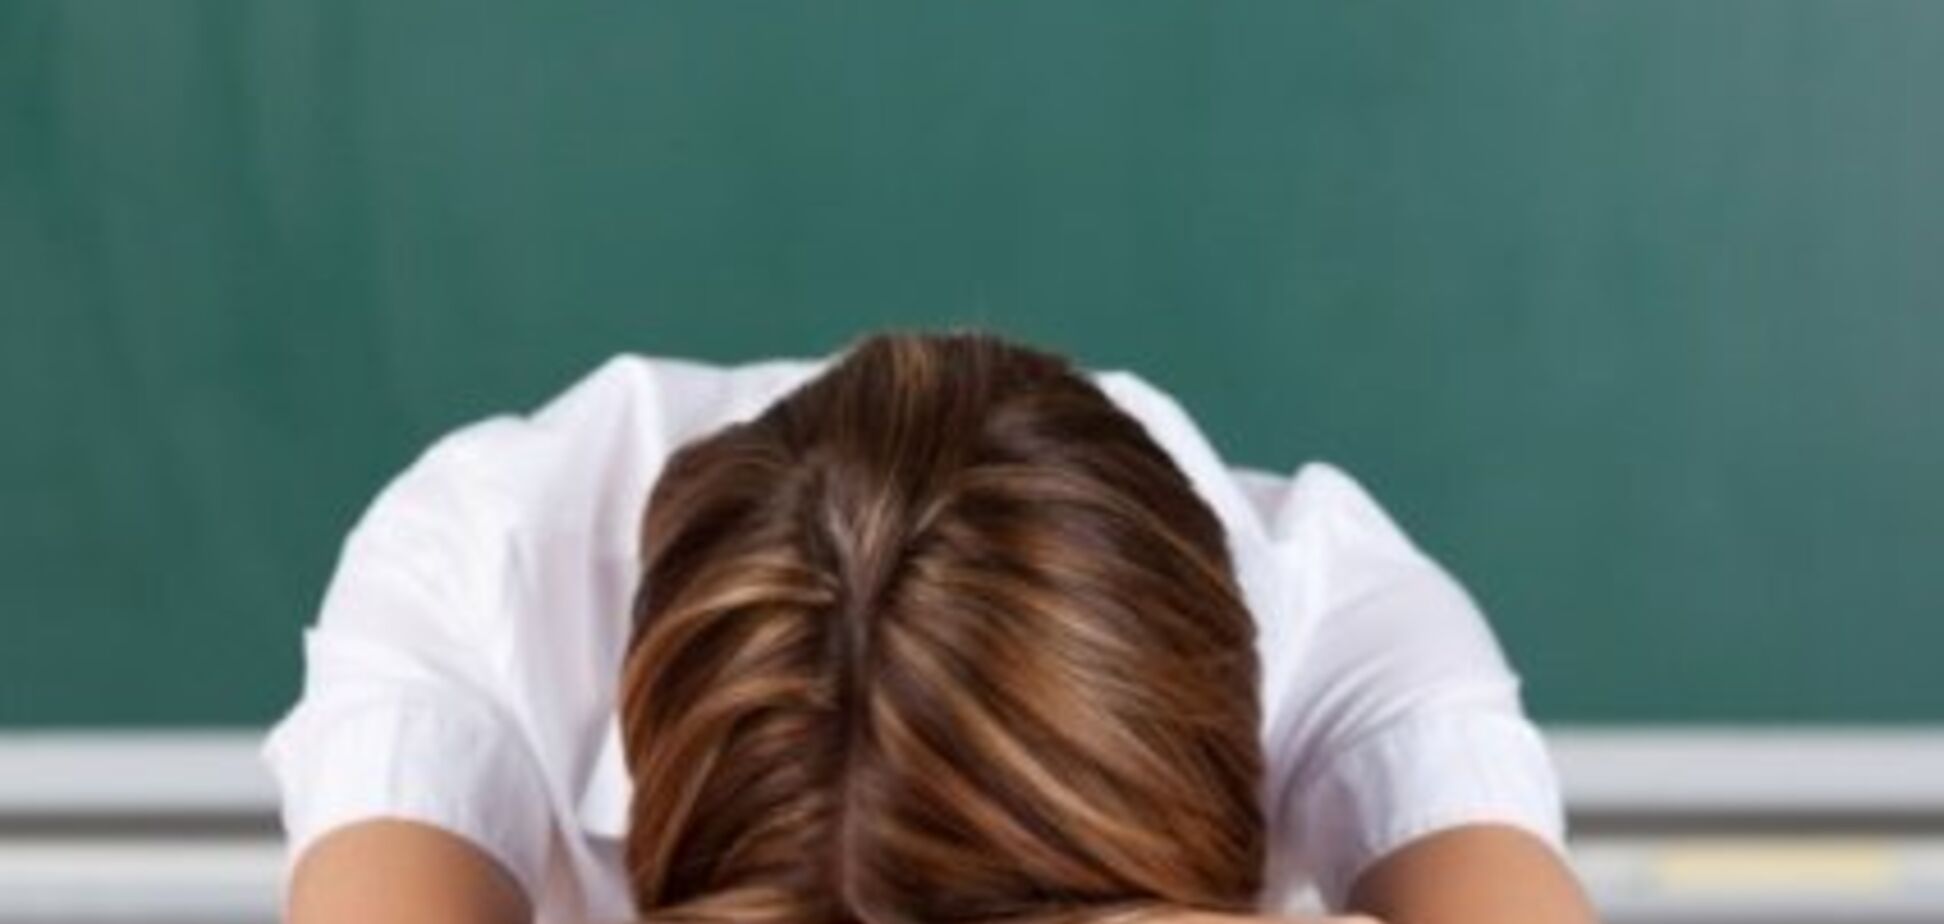 В США учительница обвинила школьника в домогательствах